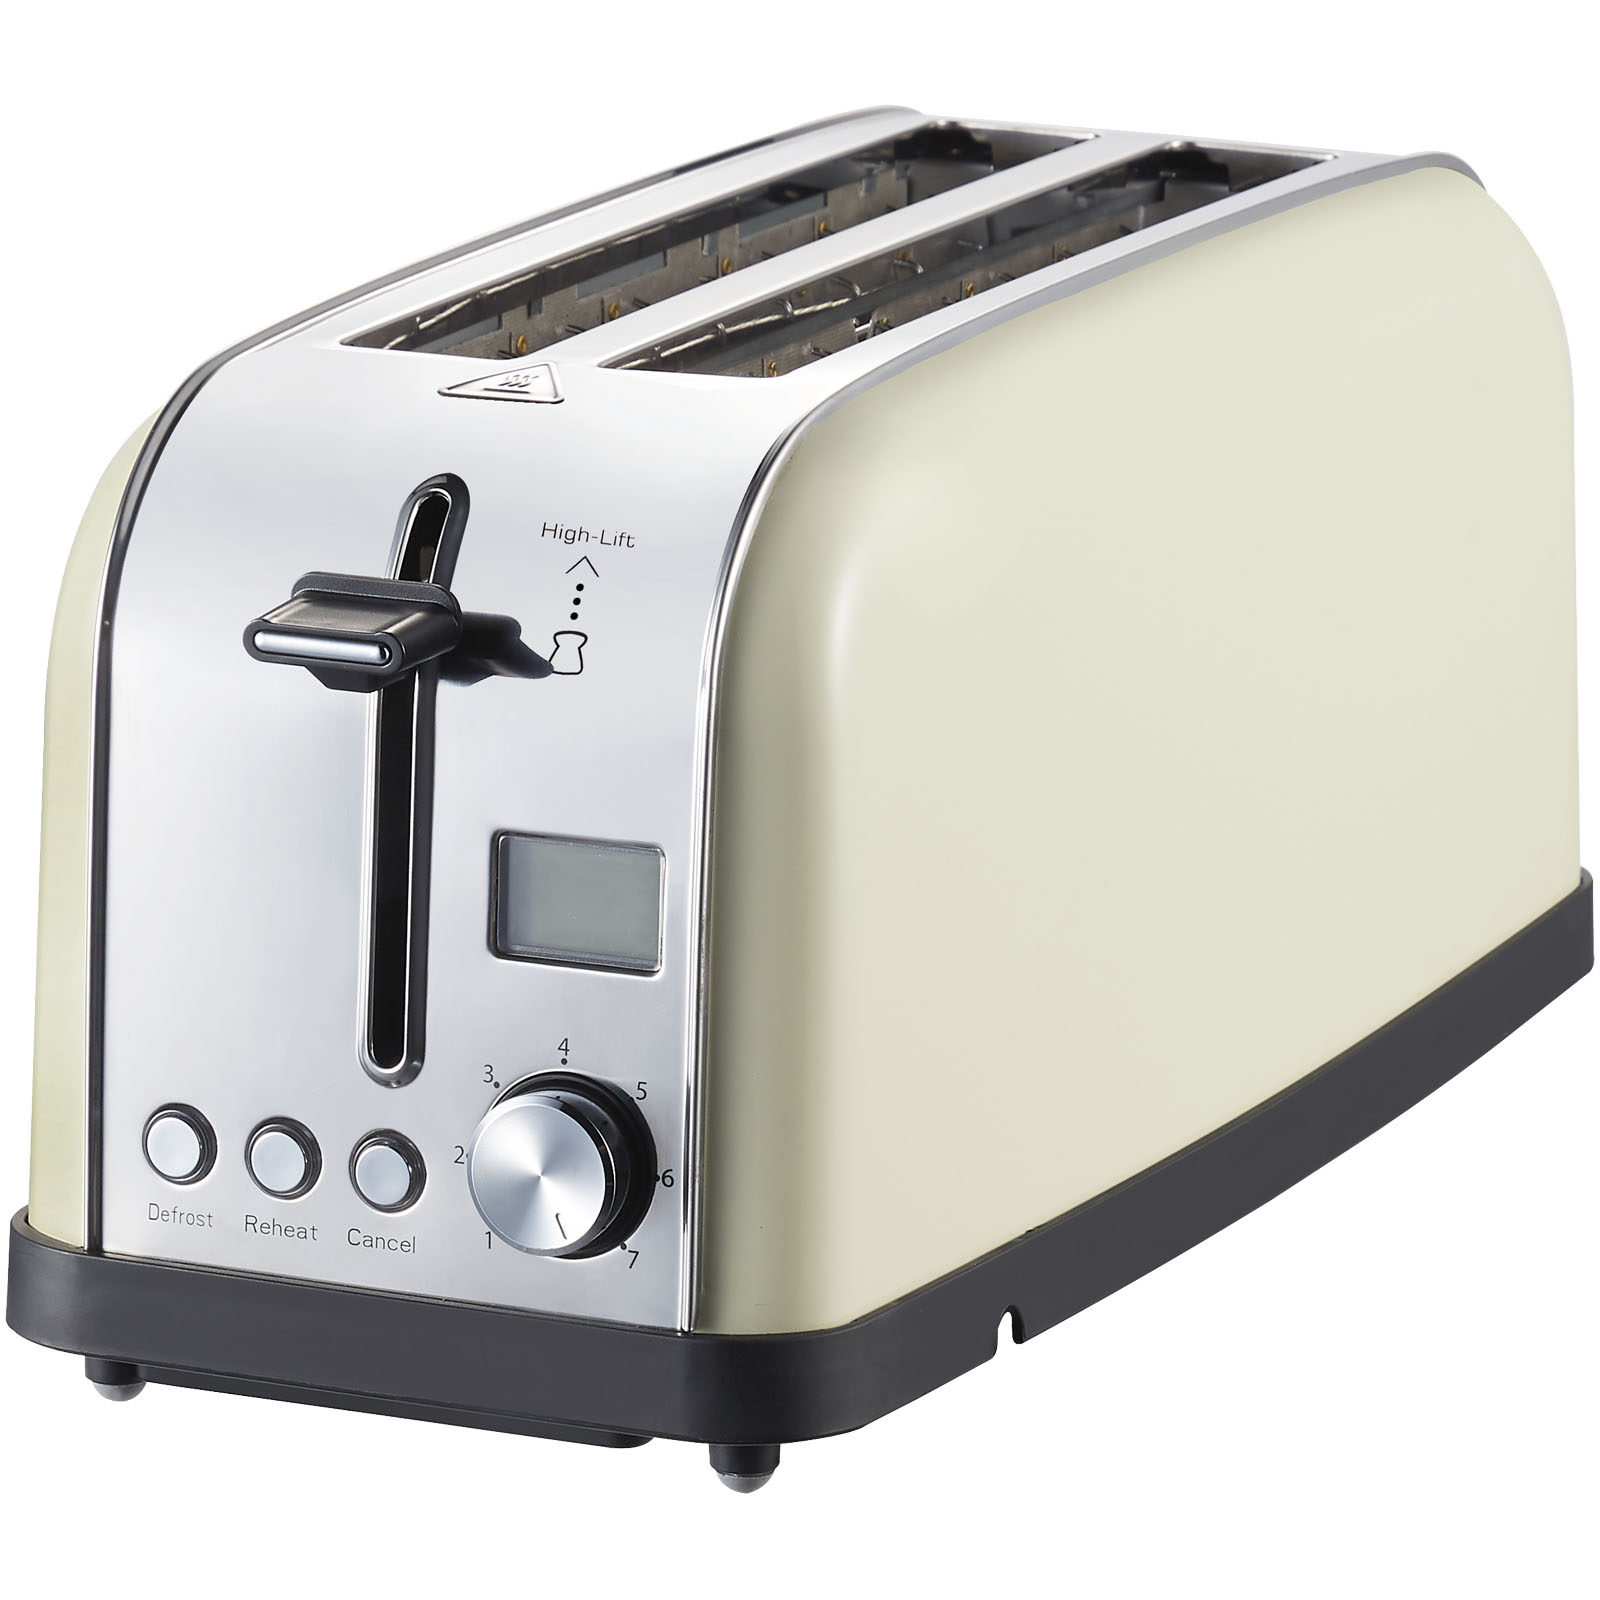 Prixton Bianca Pro Toaster